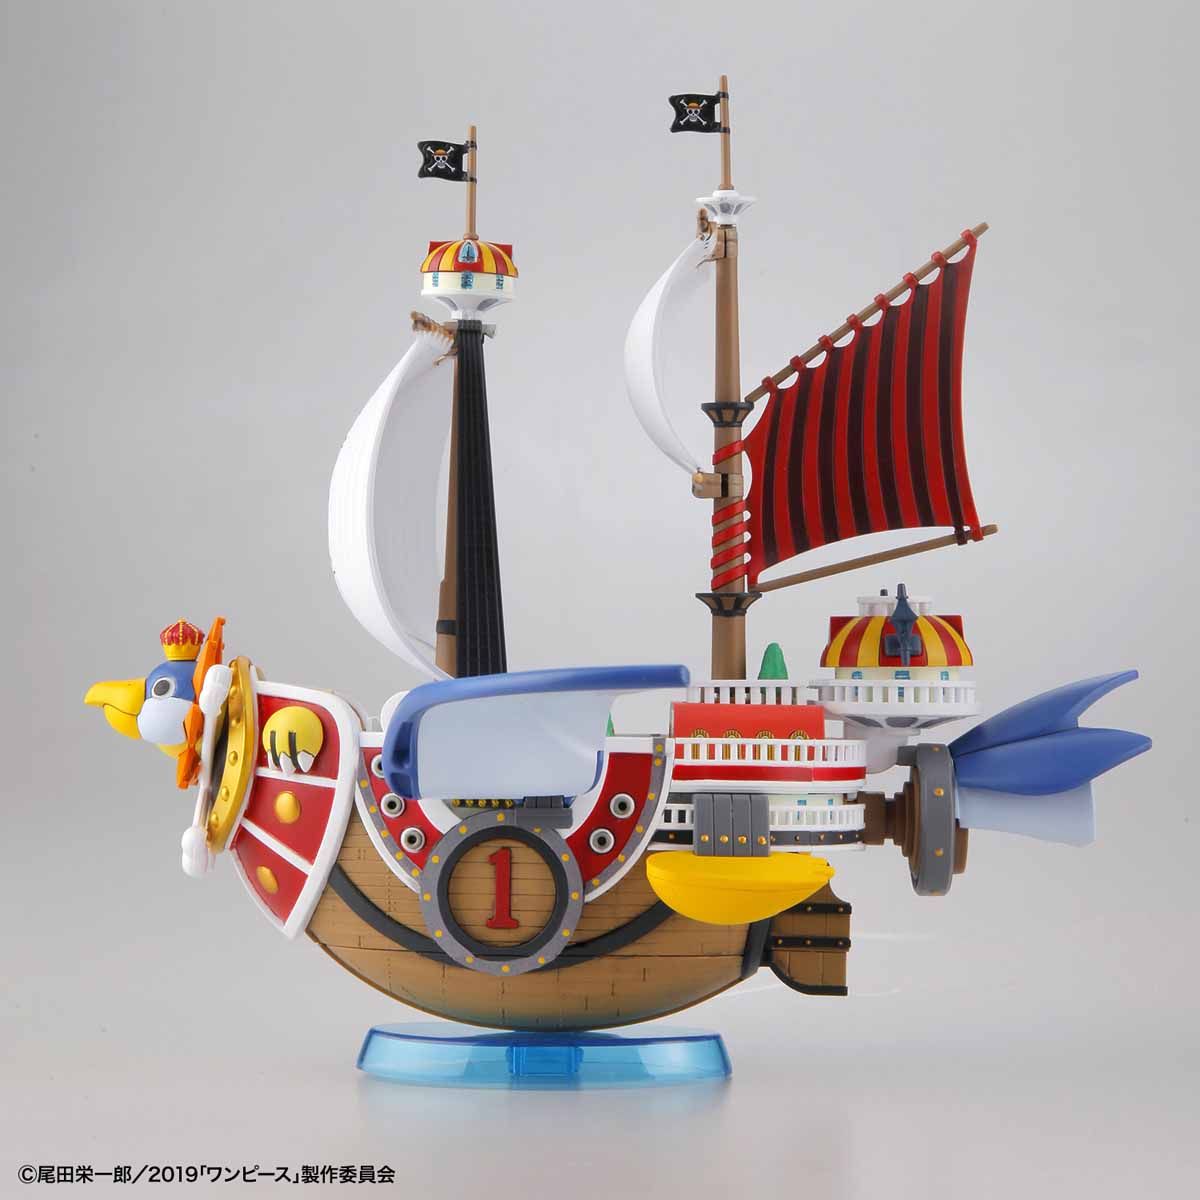 ワンピース偉大なる船(グランドシップ)コレクション サウザンド・サニー号 フライングモデル 01